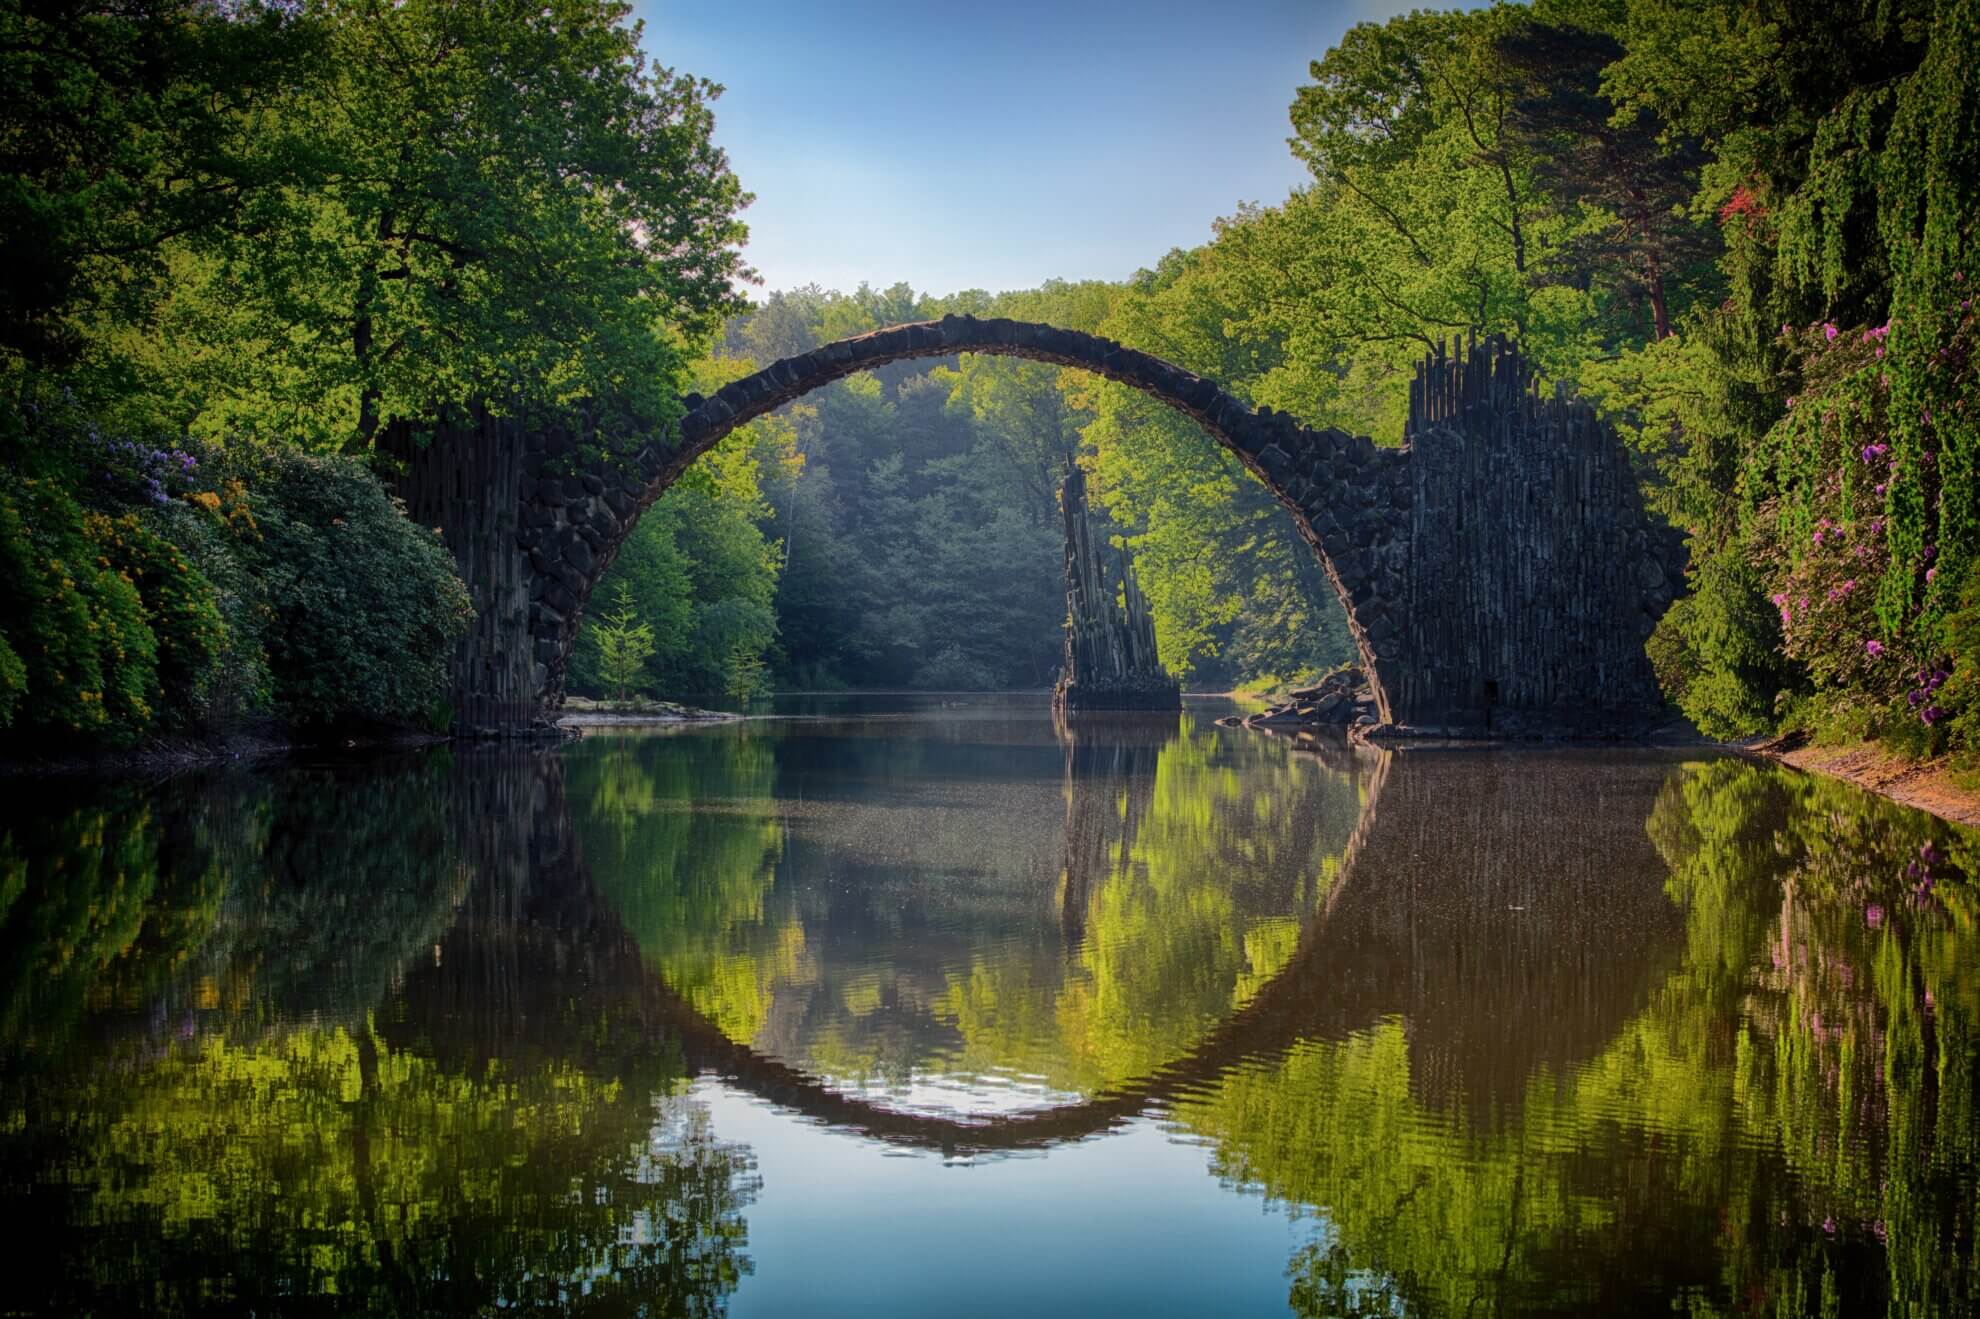 Alte Steinbrücke die über einen ruhigen Fluss führt. Symbolisch für die klassischen Übergangsrituale.